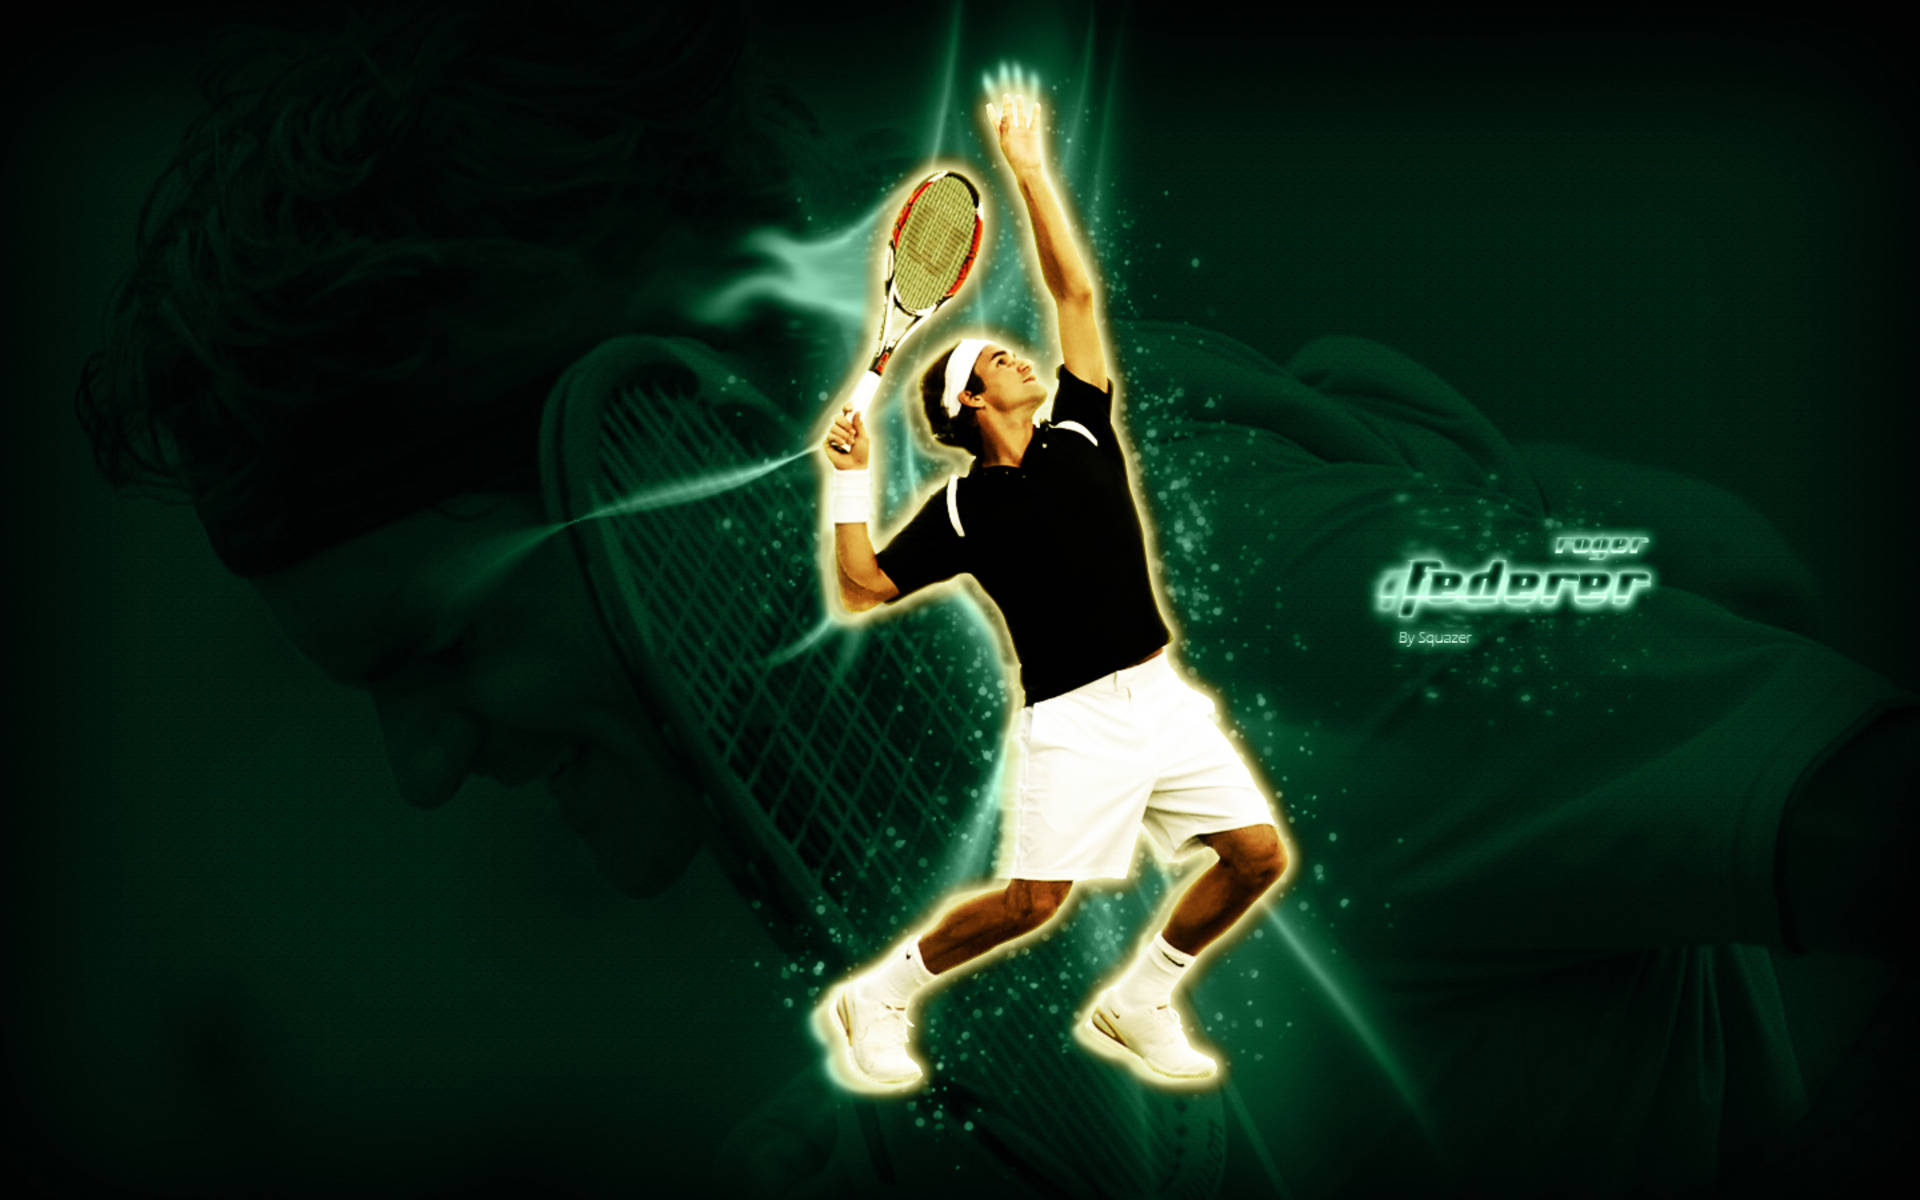 Roger Federer Tennis Poster Background